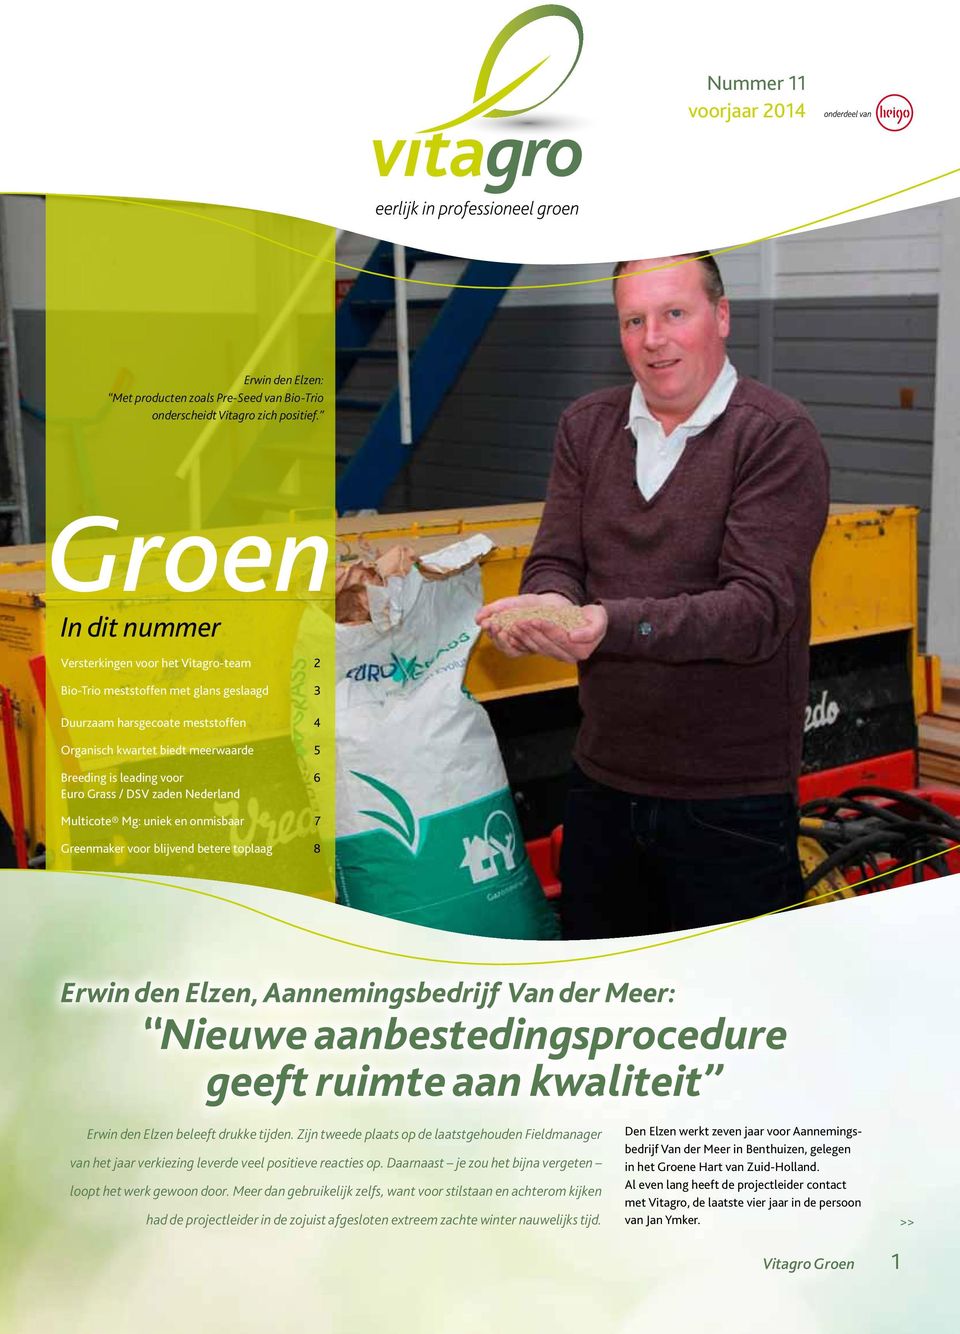 Euro Grass / DSV zaden Nederland Multicote Mg: uniek en onmisbaar 7 Greenmaker voor blijvend betere toplaag 8 Erwin den Elzen, Aannemingsbedrijf Van der Meer: Nieuwe aanbestedingsprocedure geeft